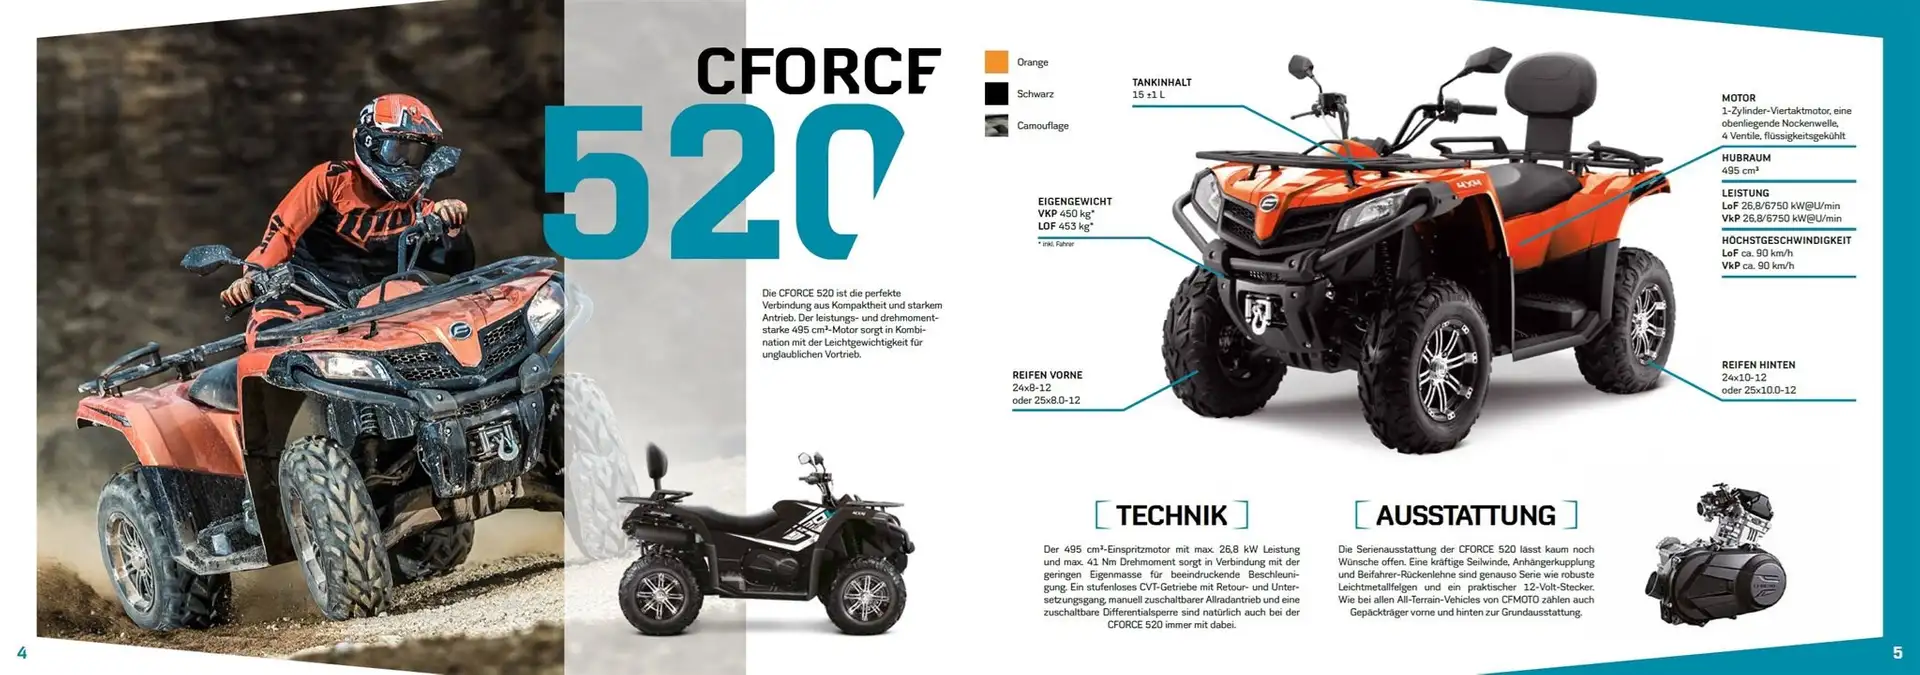 CF Moto CForce 520 Orange - 2